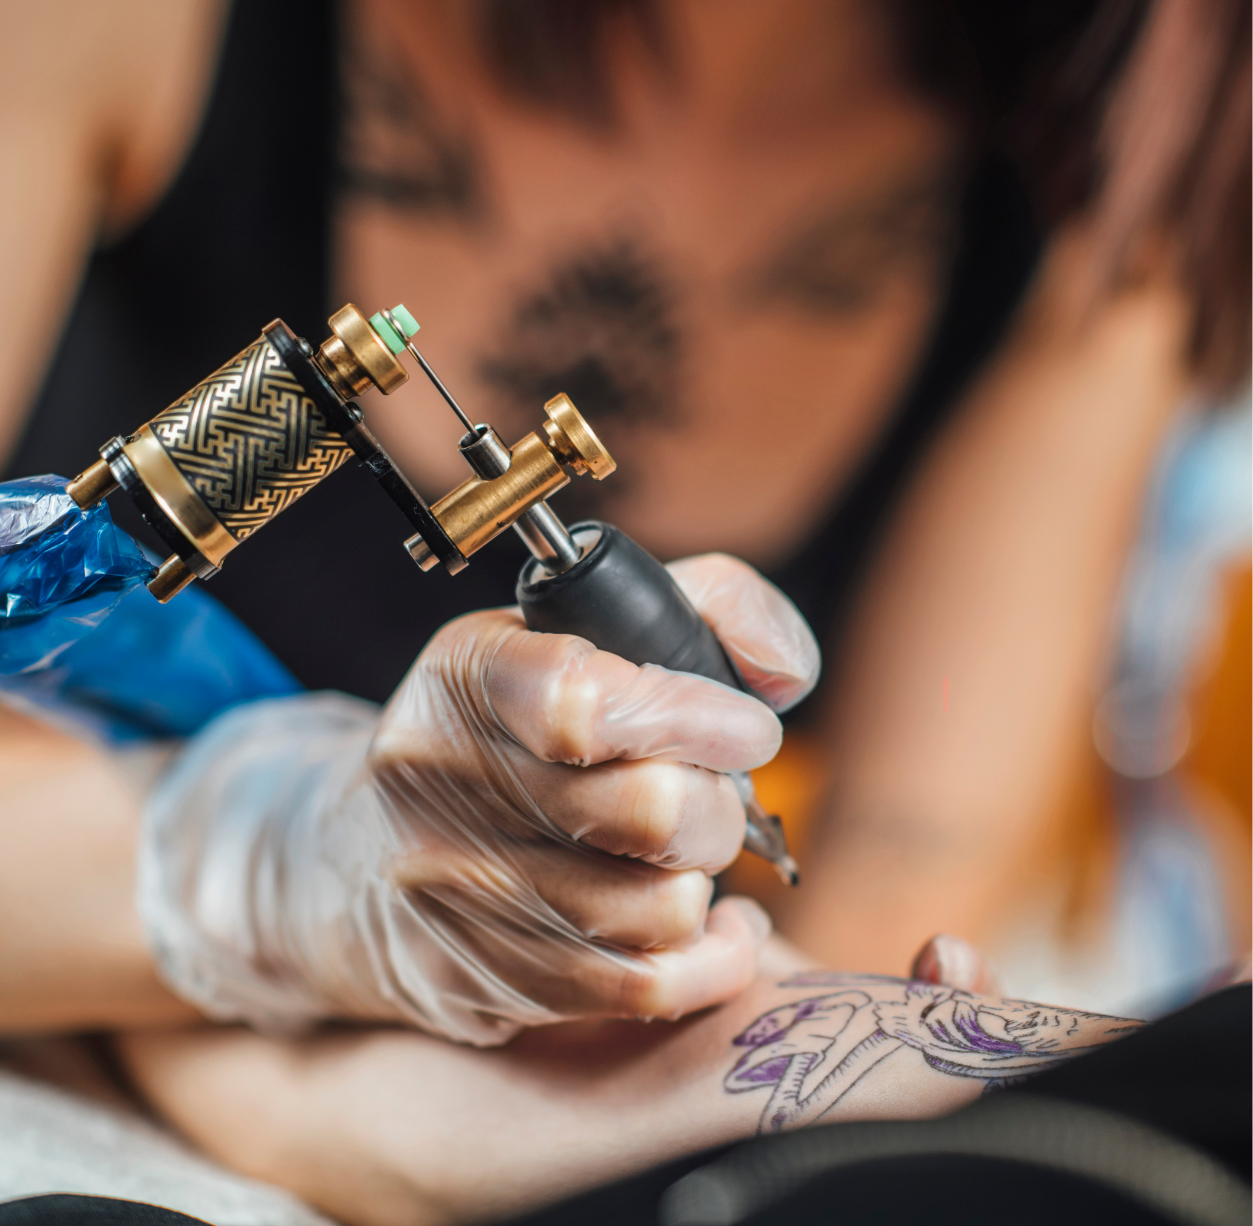 Tatuajes y piercing: Seremi de Salud entrega las recomendaciones para prevenir los riesgos sanitarios